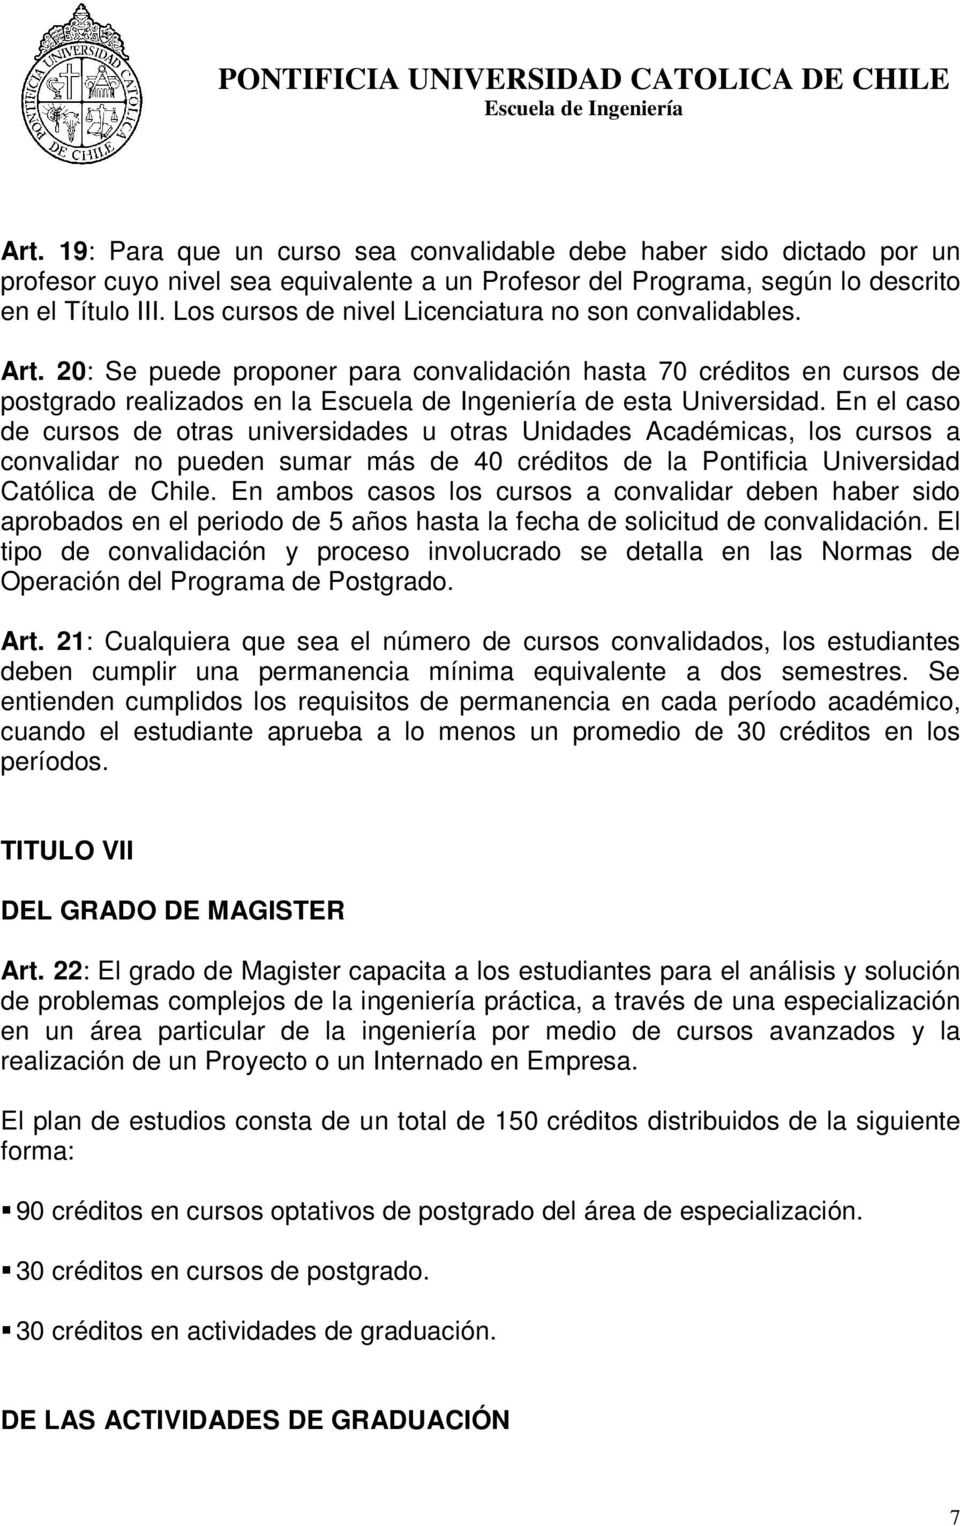 En el caso de cursos de otras universidades u otras Unidades Académicas, los cursos a convalidar no pueden sumar más de 40 créditos de la Pontificia Universidad Católica de Chile.